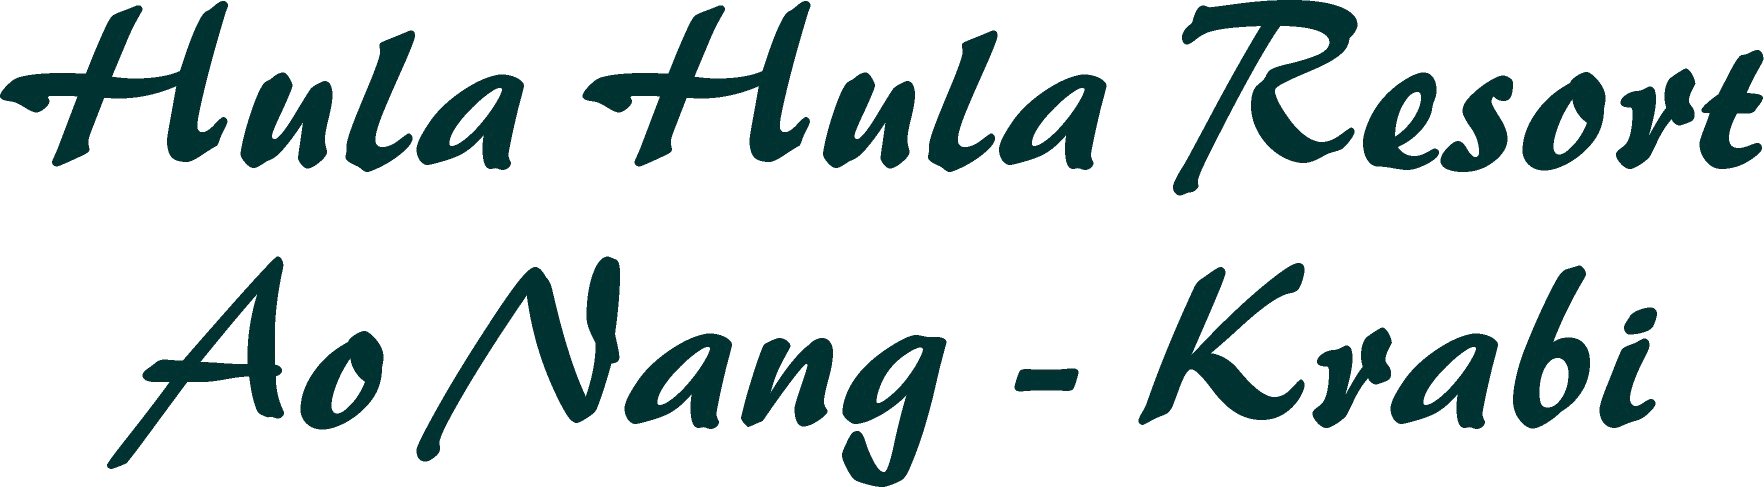 Hula hula resort overskrift